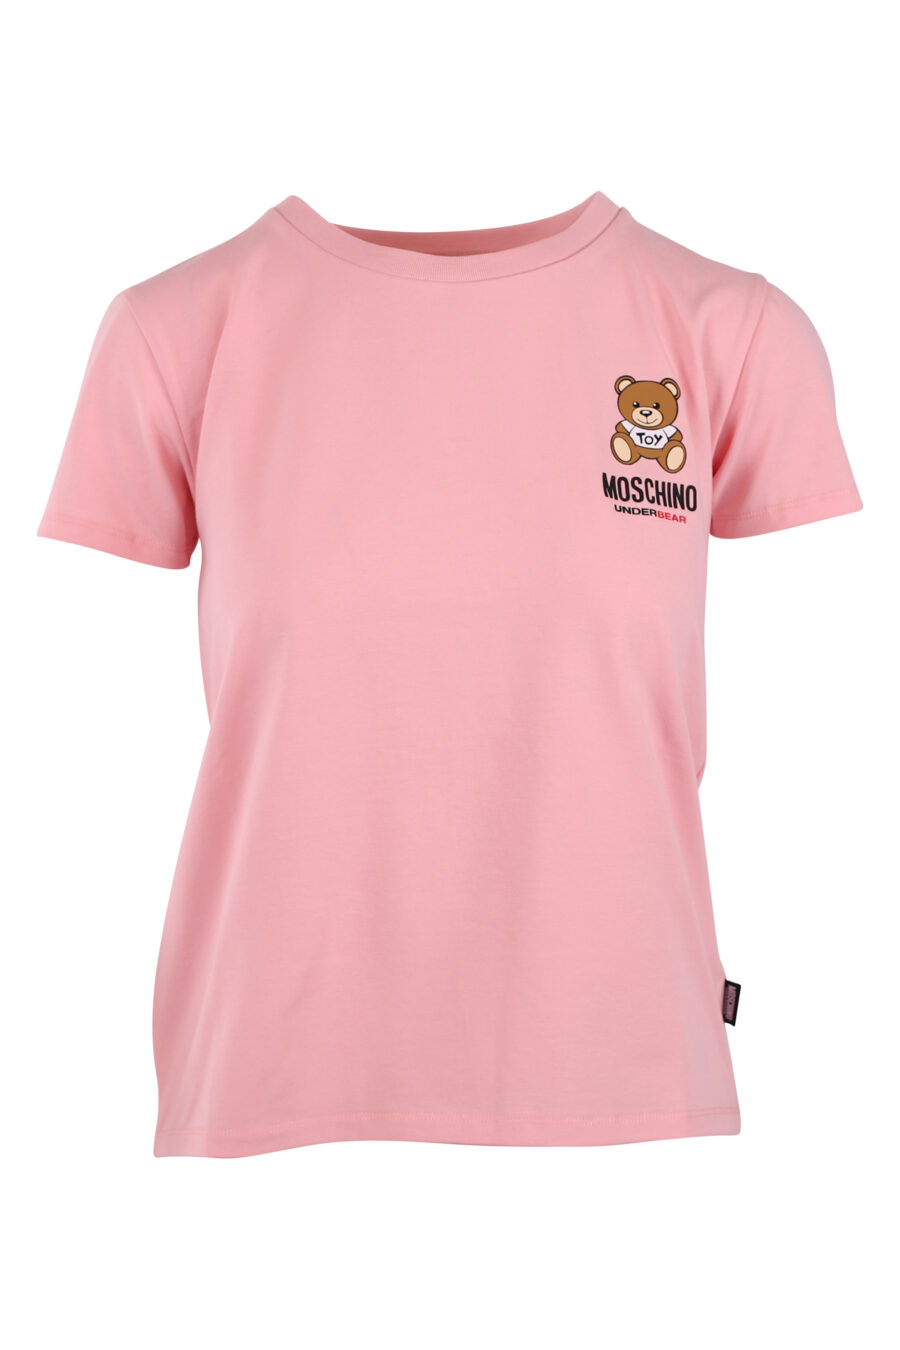 Camiseta rosa con logo oso pequeño - IMG 6243